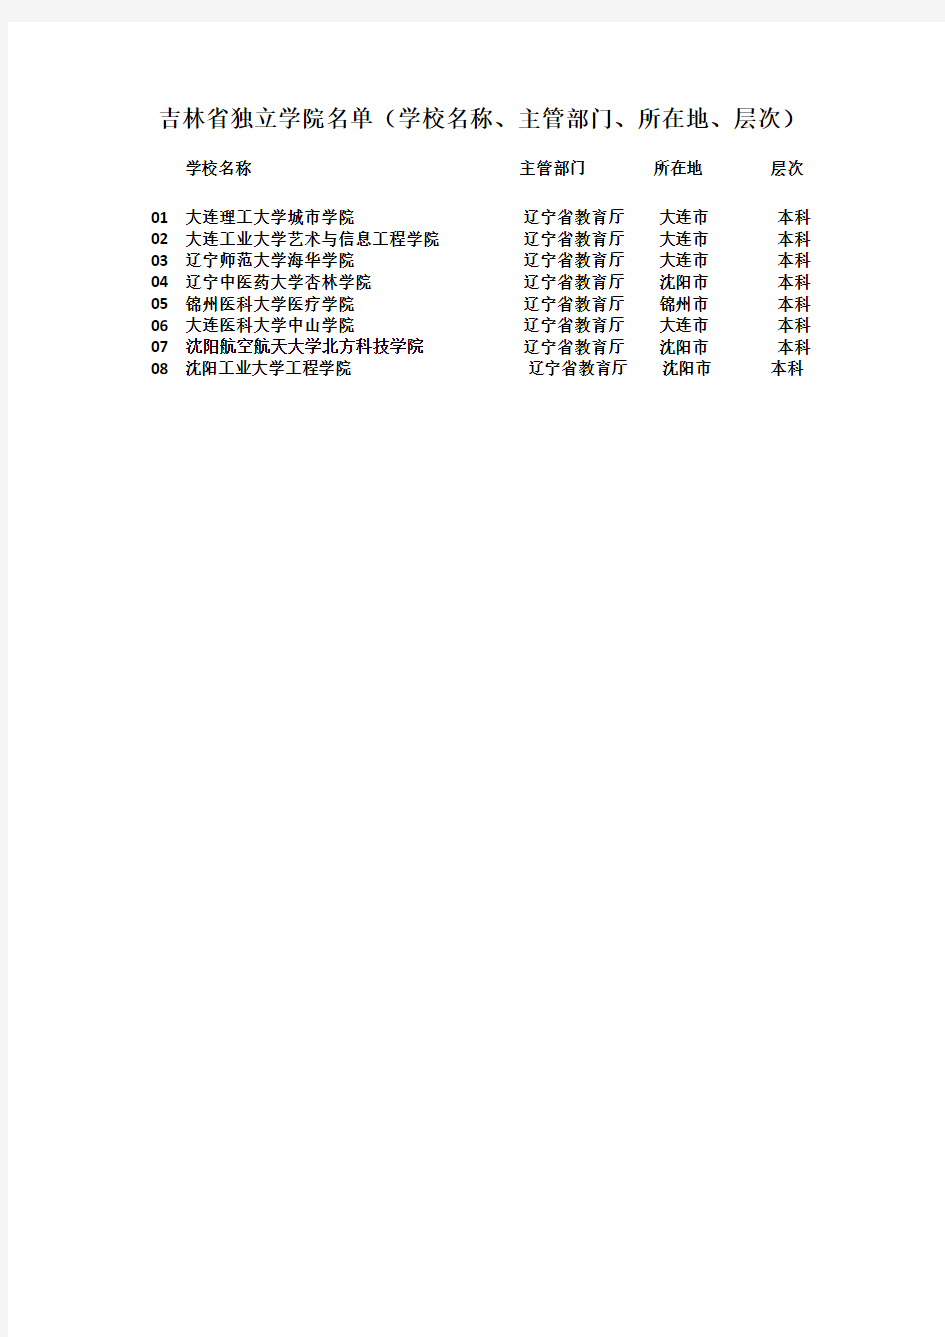 吉林省独立学院名单(学校名称、主管部门、所在地、层次)